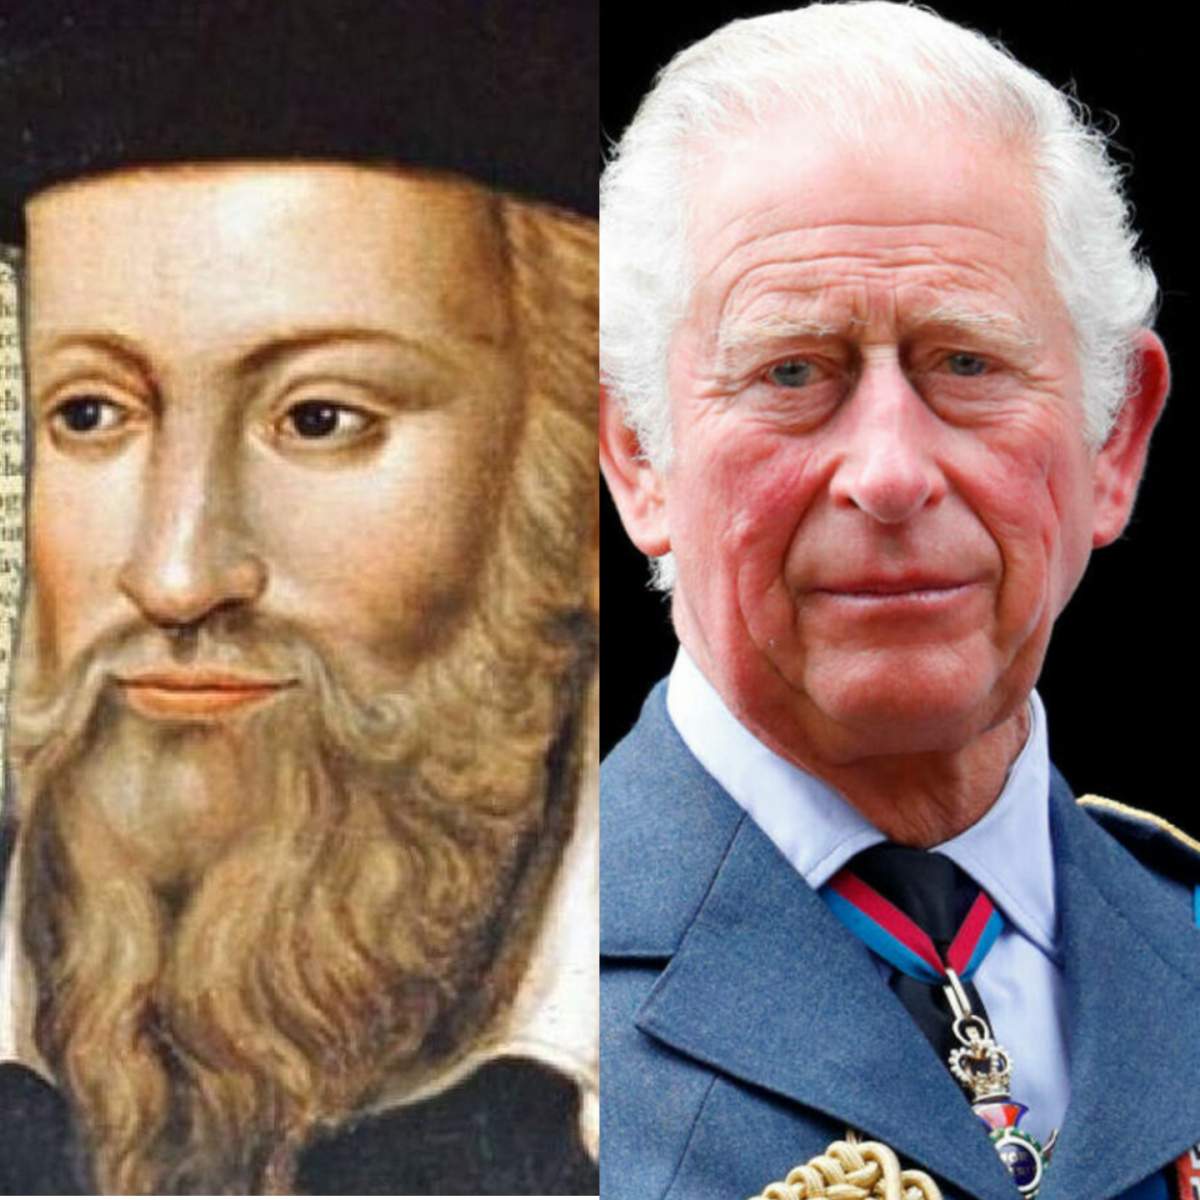 Nostradamus a prezis că prințul Charles nu va domni mult și va abdica. Un bărbat misterios urmează să îi ia locul